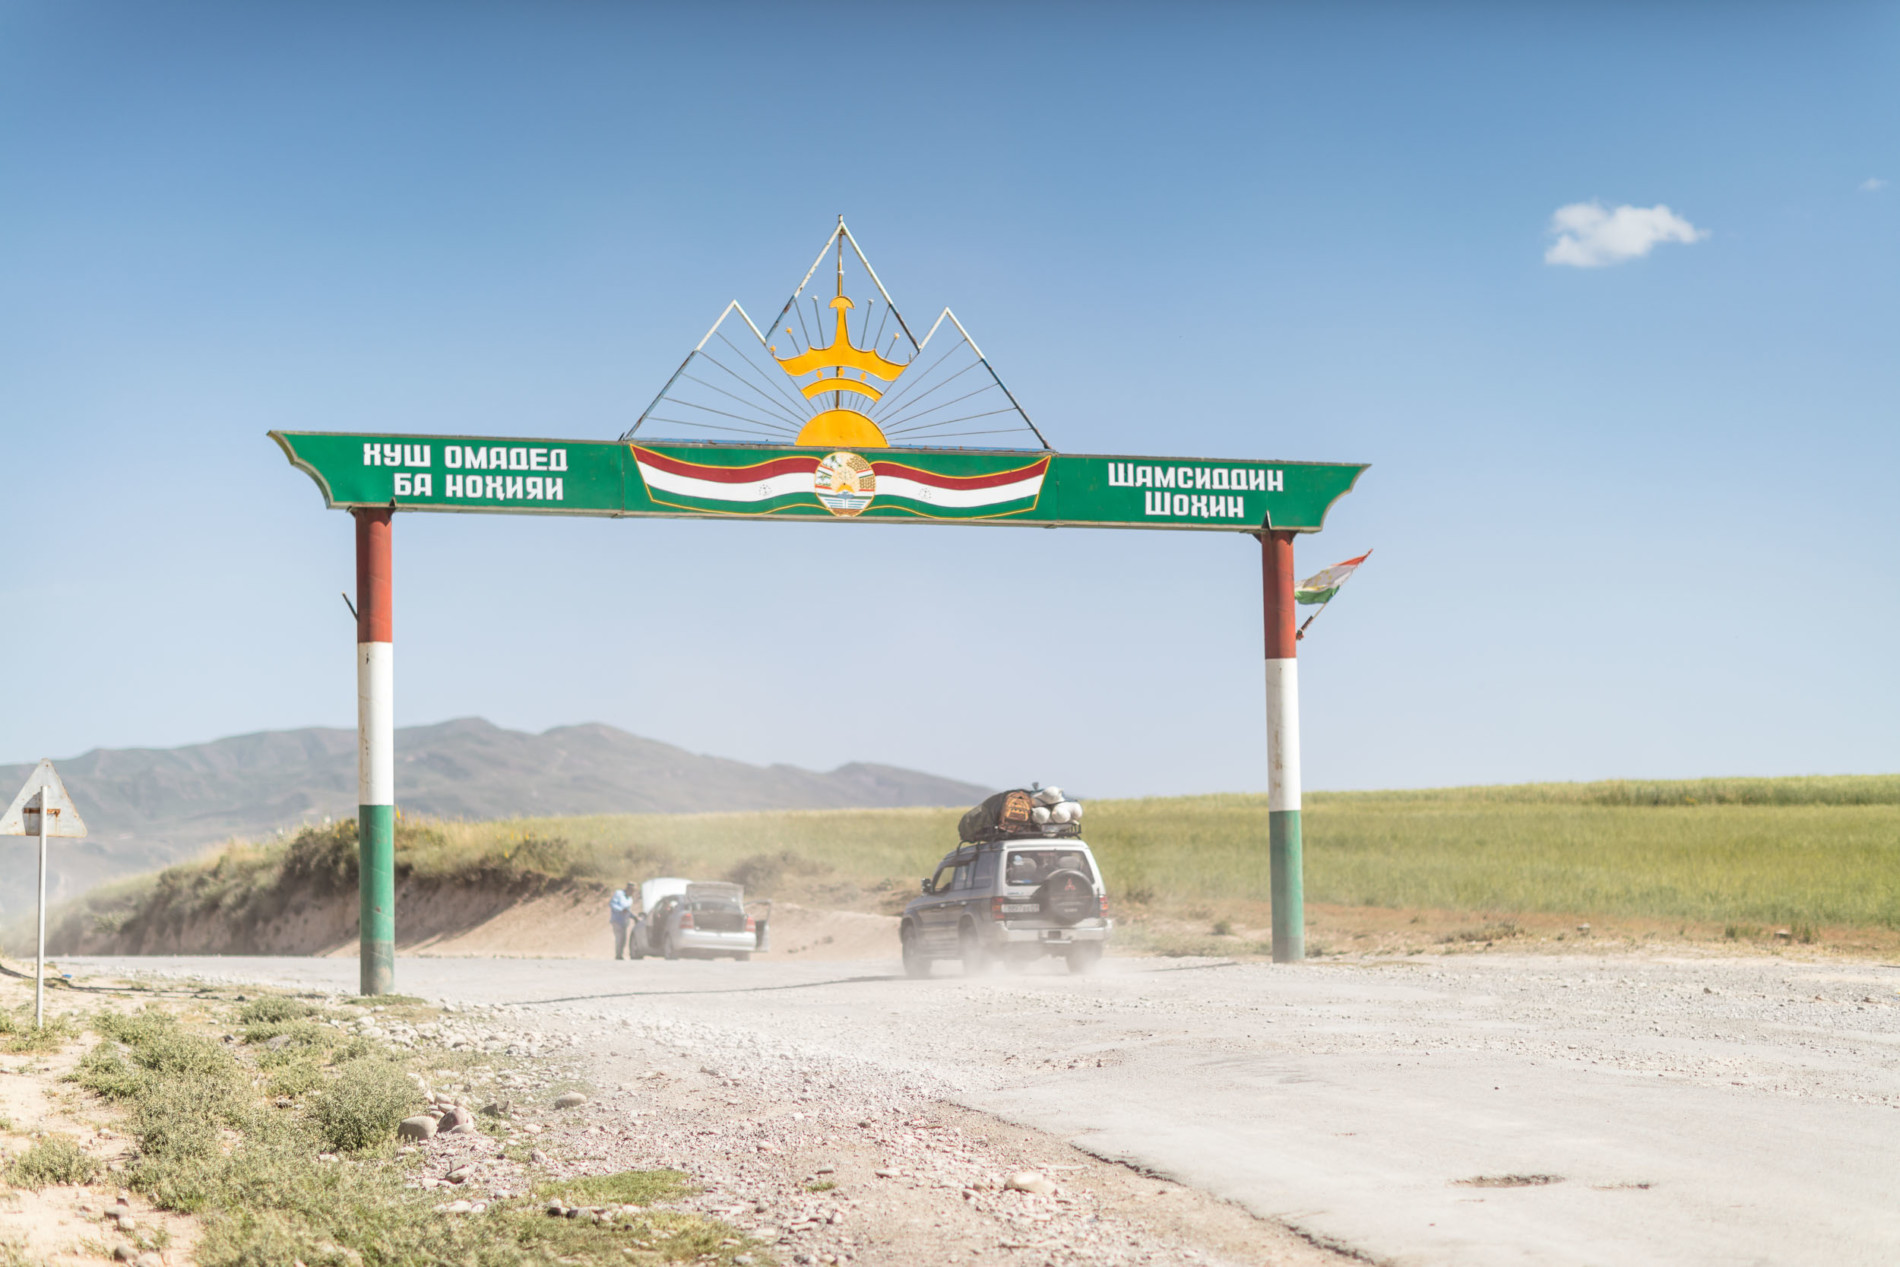  Tadschikistan